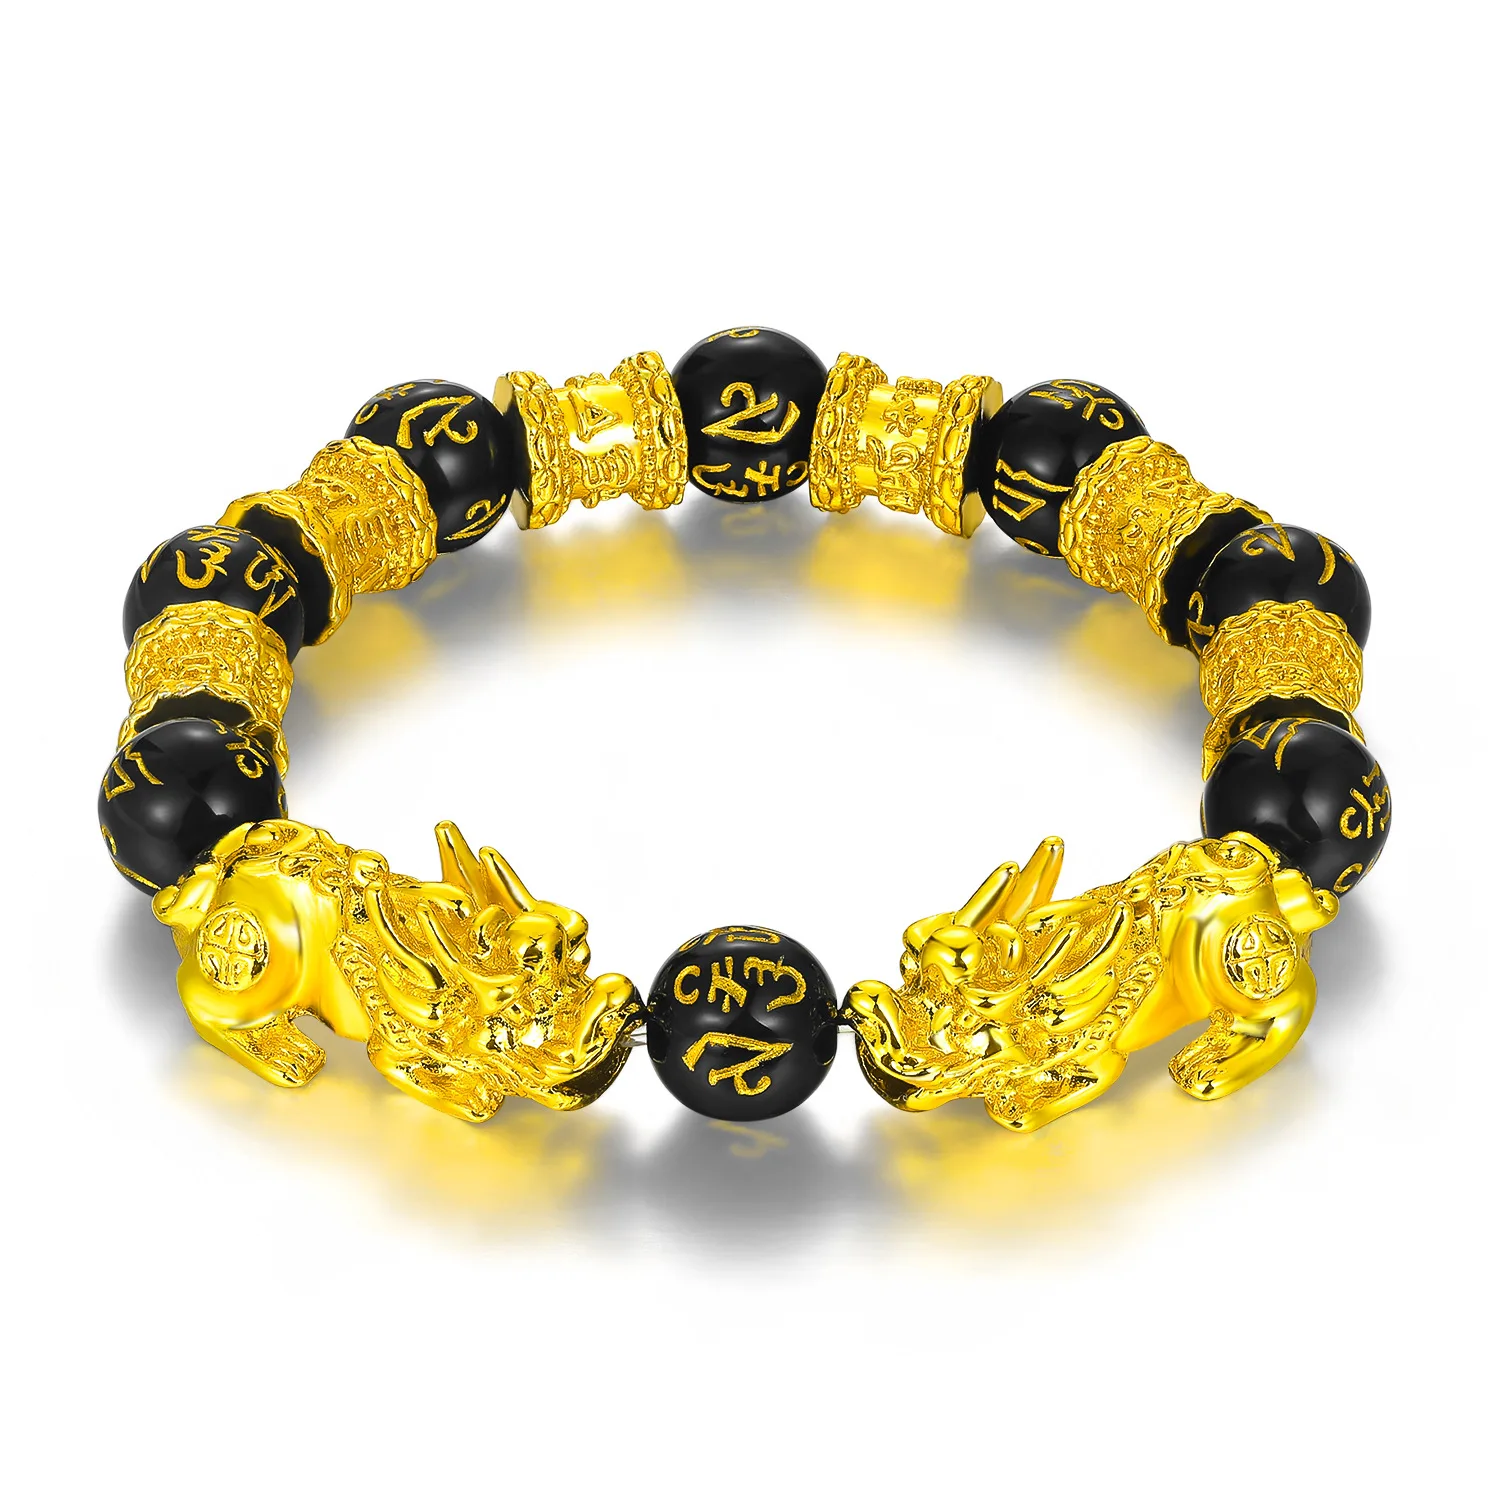 Feng Shui Black Obsidian Alloy Wealth Bracelet w/Golden Pixiu Lucky Jewelry Gift 